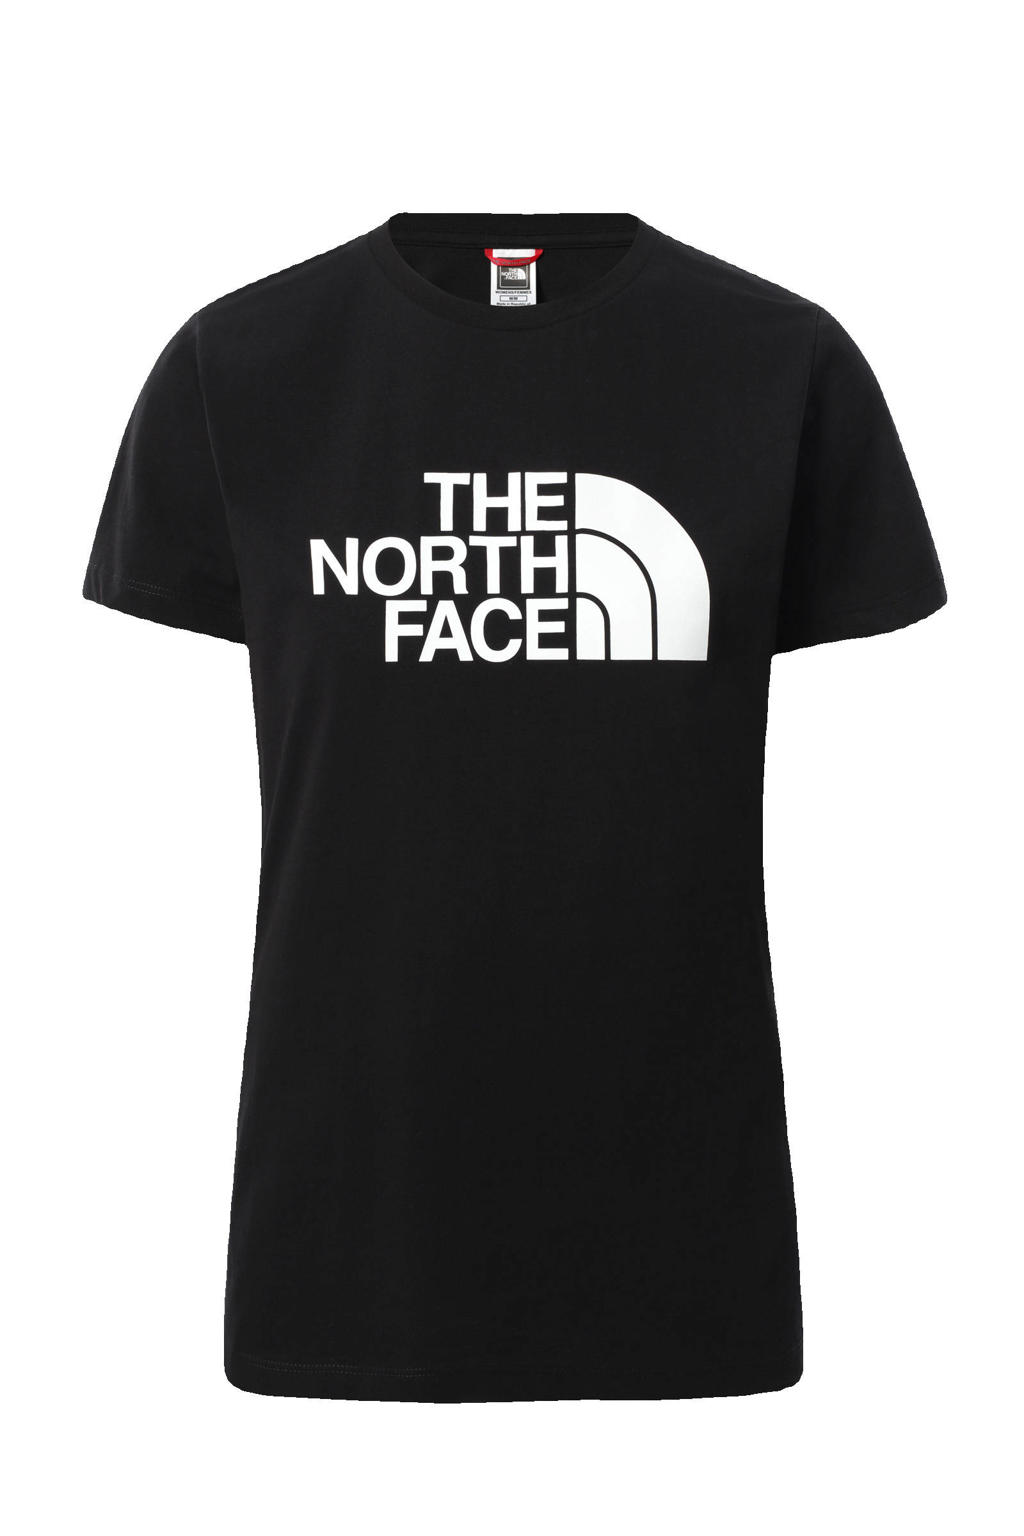 Zwart en witte dames The North Face T-shirt Easy van katoen met logo dessin, korte mouwen en ronde hals